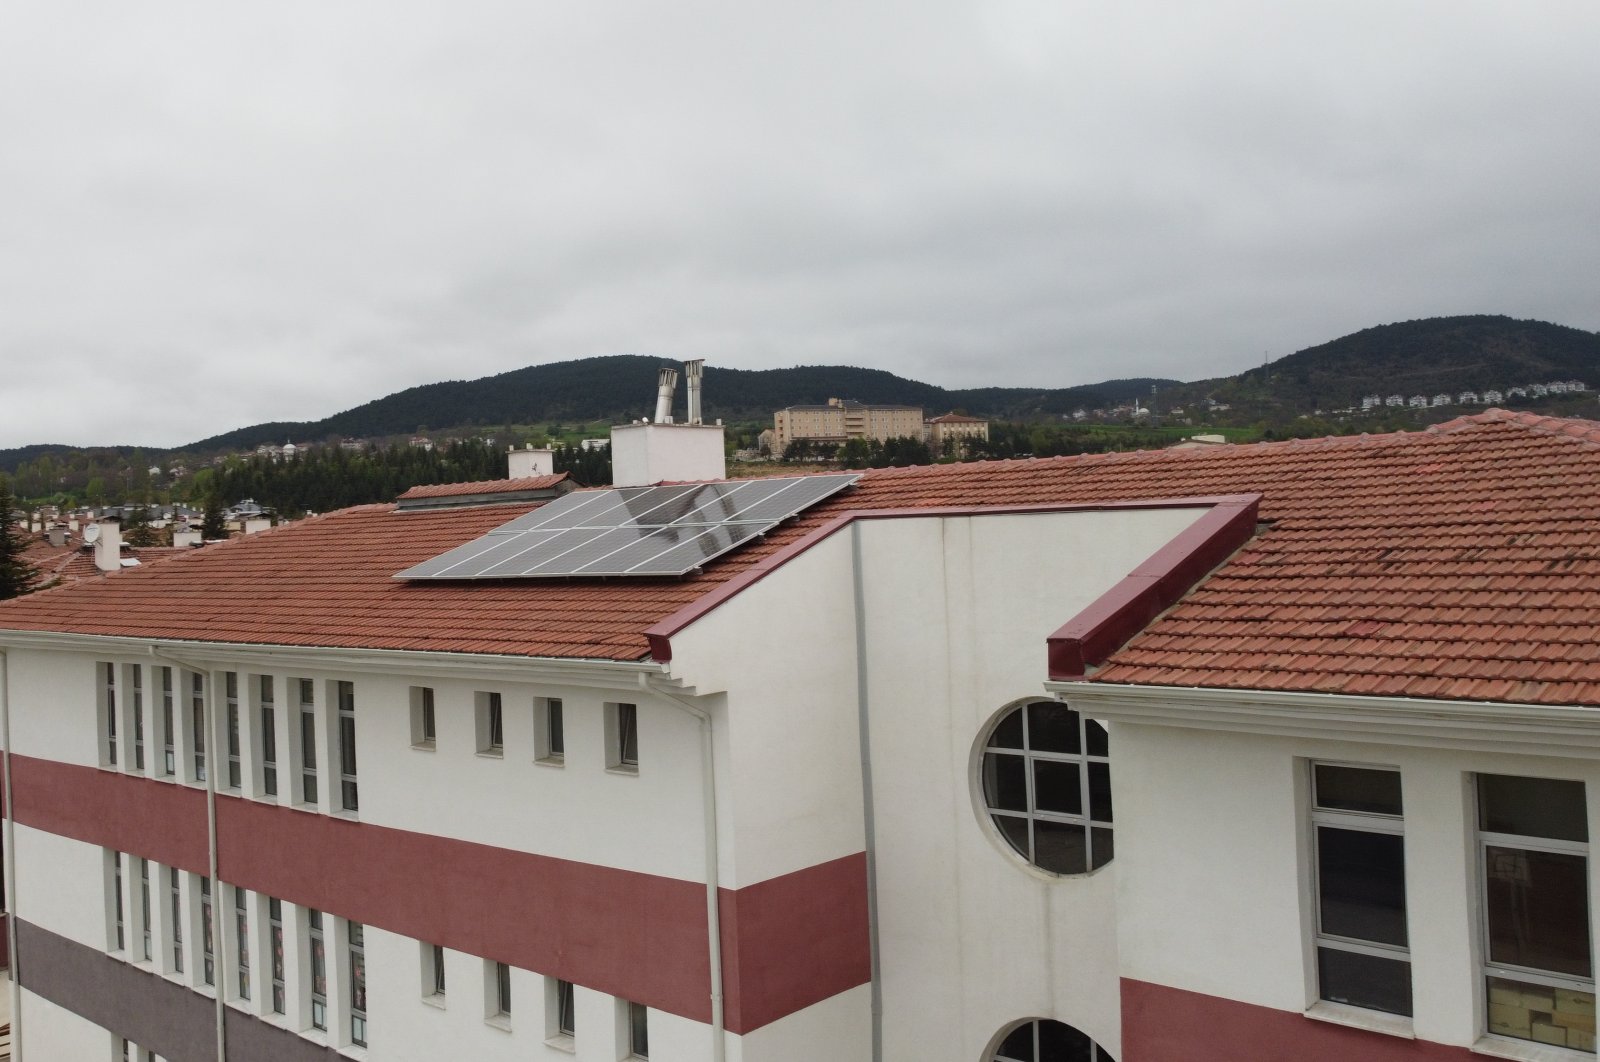 Sekolah-sekolah di Bolu Türkiye menggunakan energi matahari sebagai sumber tenaga